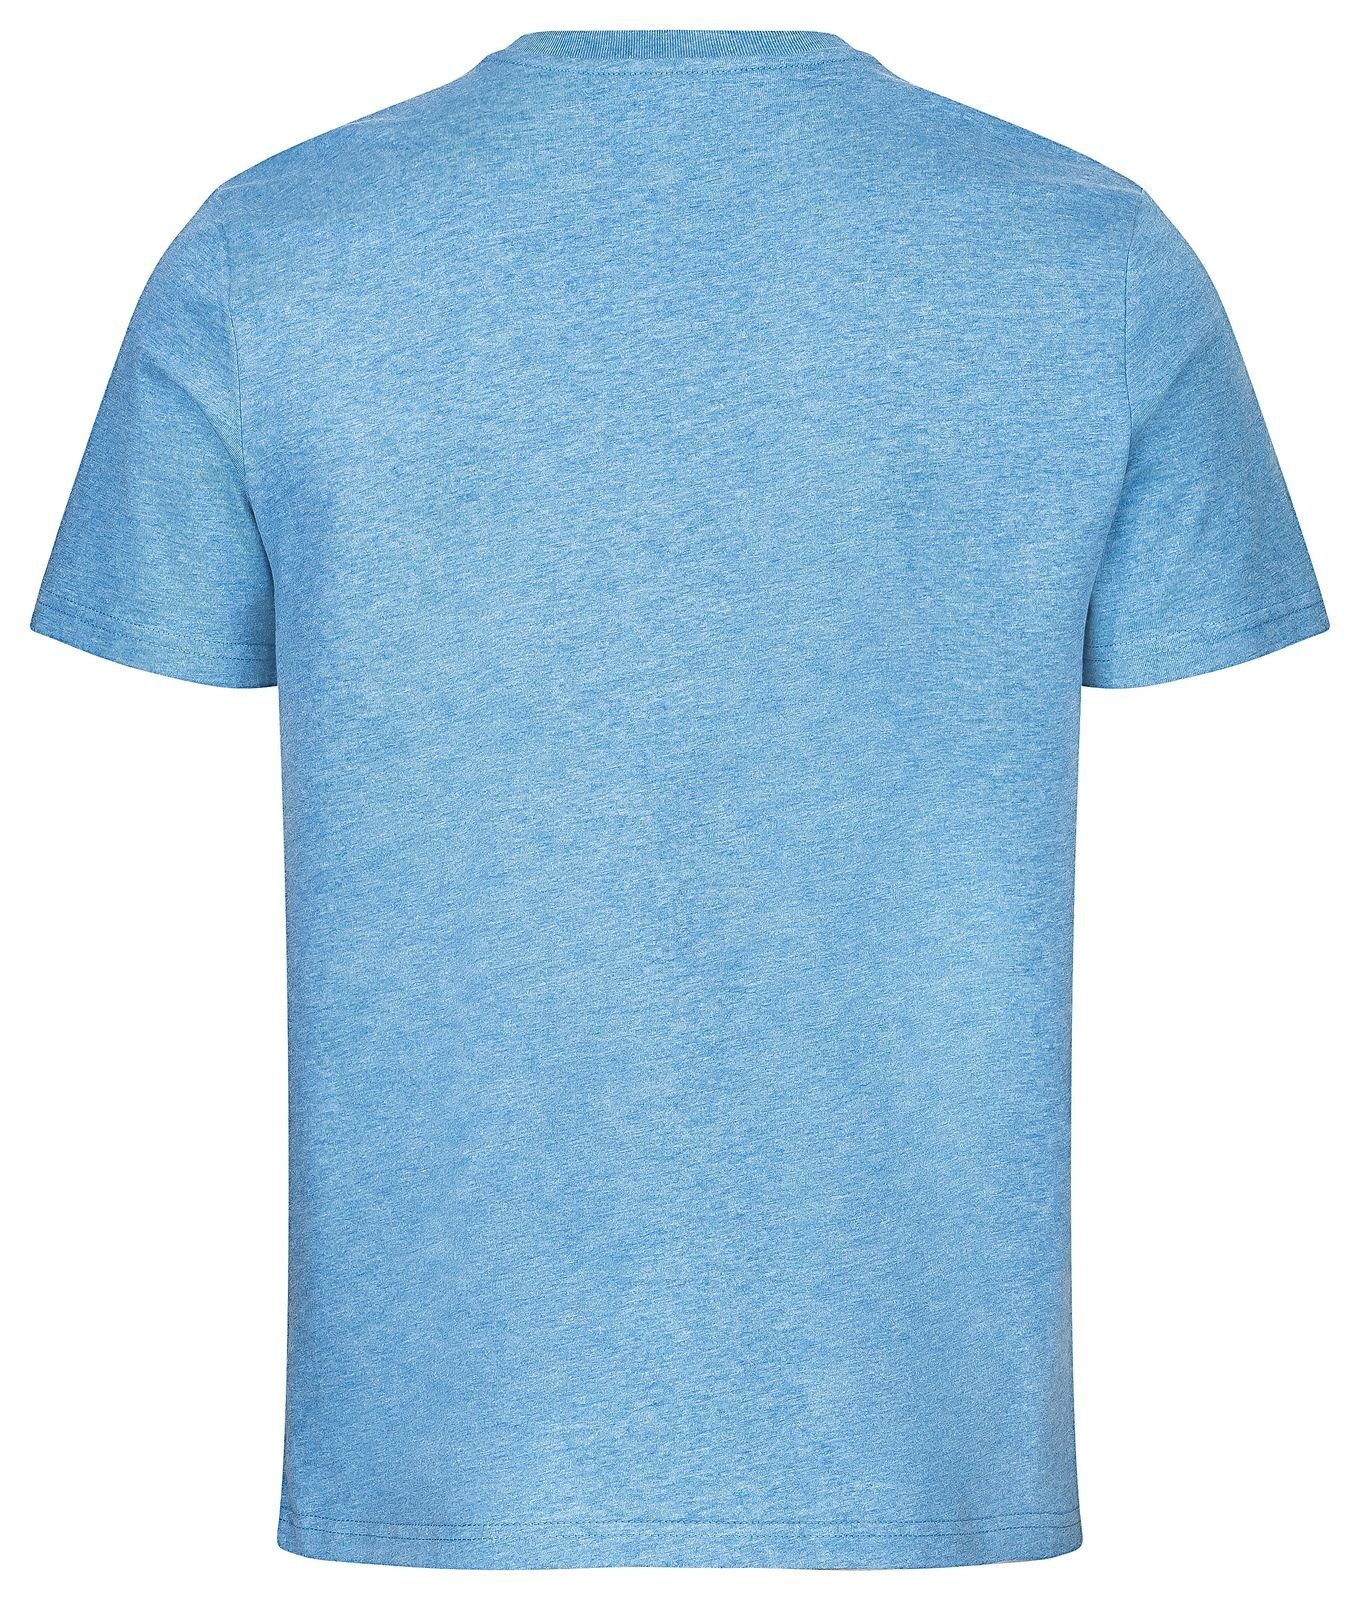 Gradnetz T-Shirt basic leather blau & 100% nachhaltig meliert unisex Biobaumwolle fair